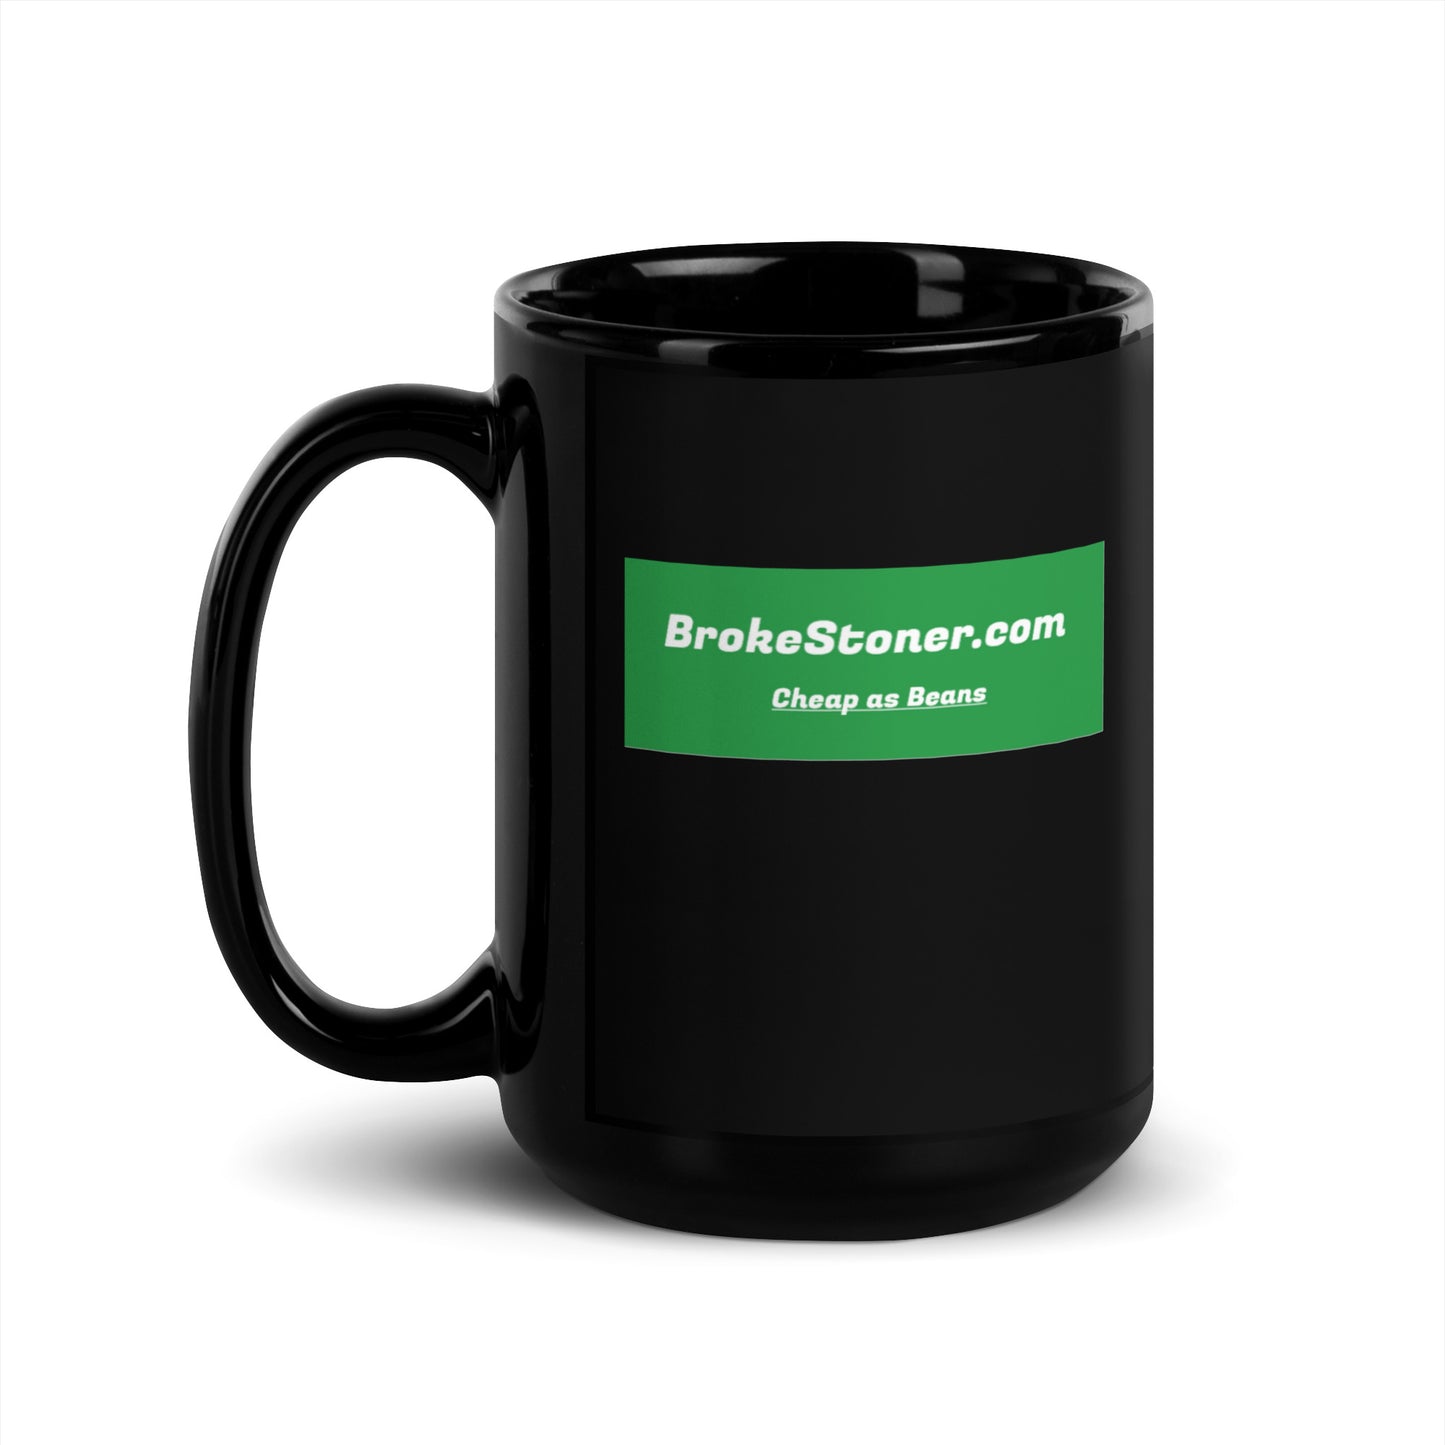 BrokeStoner.com The Mug